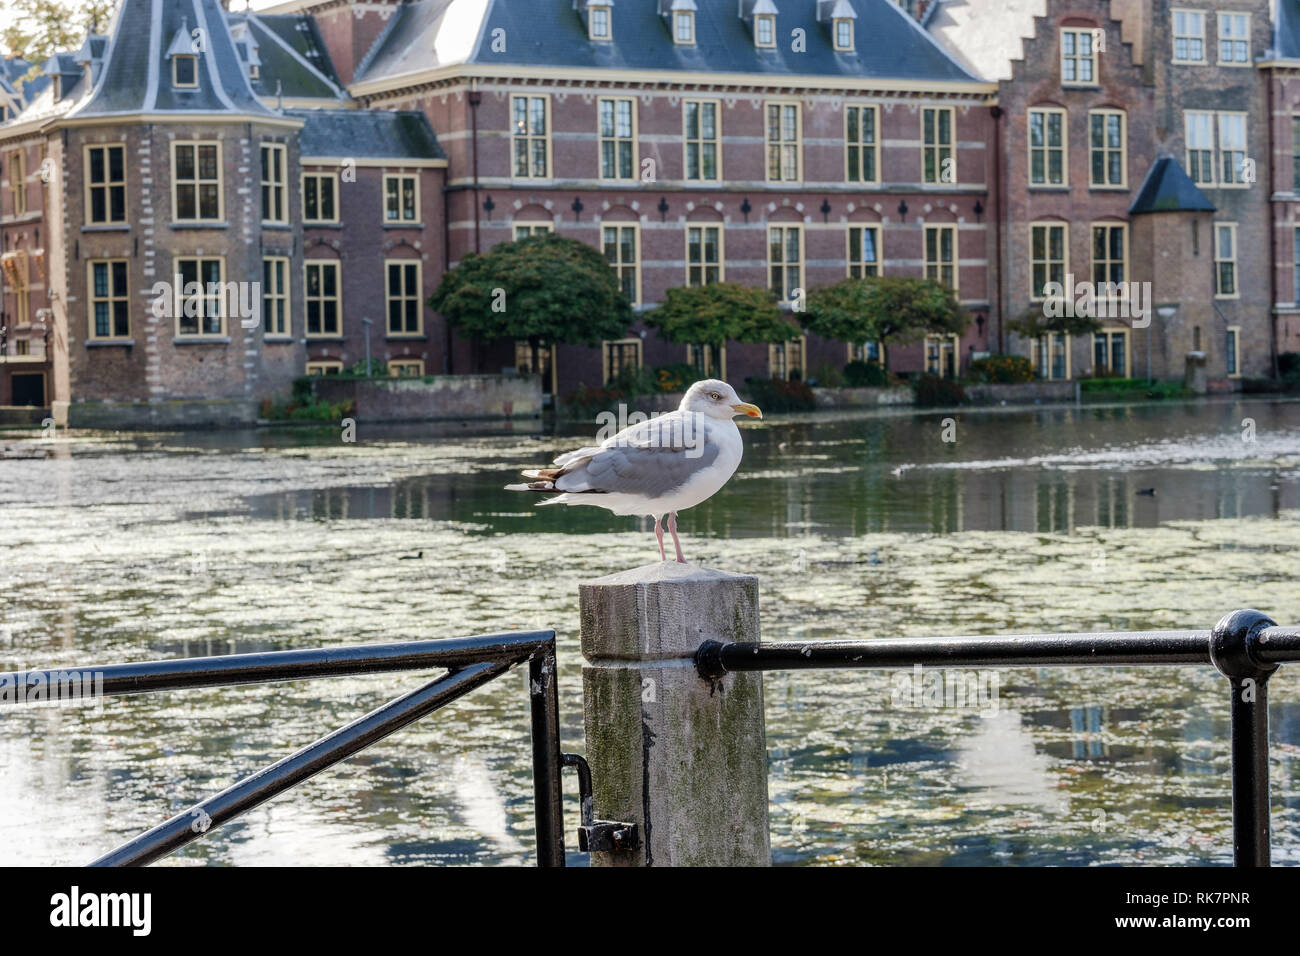 Die hofvijver (Teich) vor den Gebäuden des niederländischen Parlaments, Den Haag, Niederlande Stockfoto